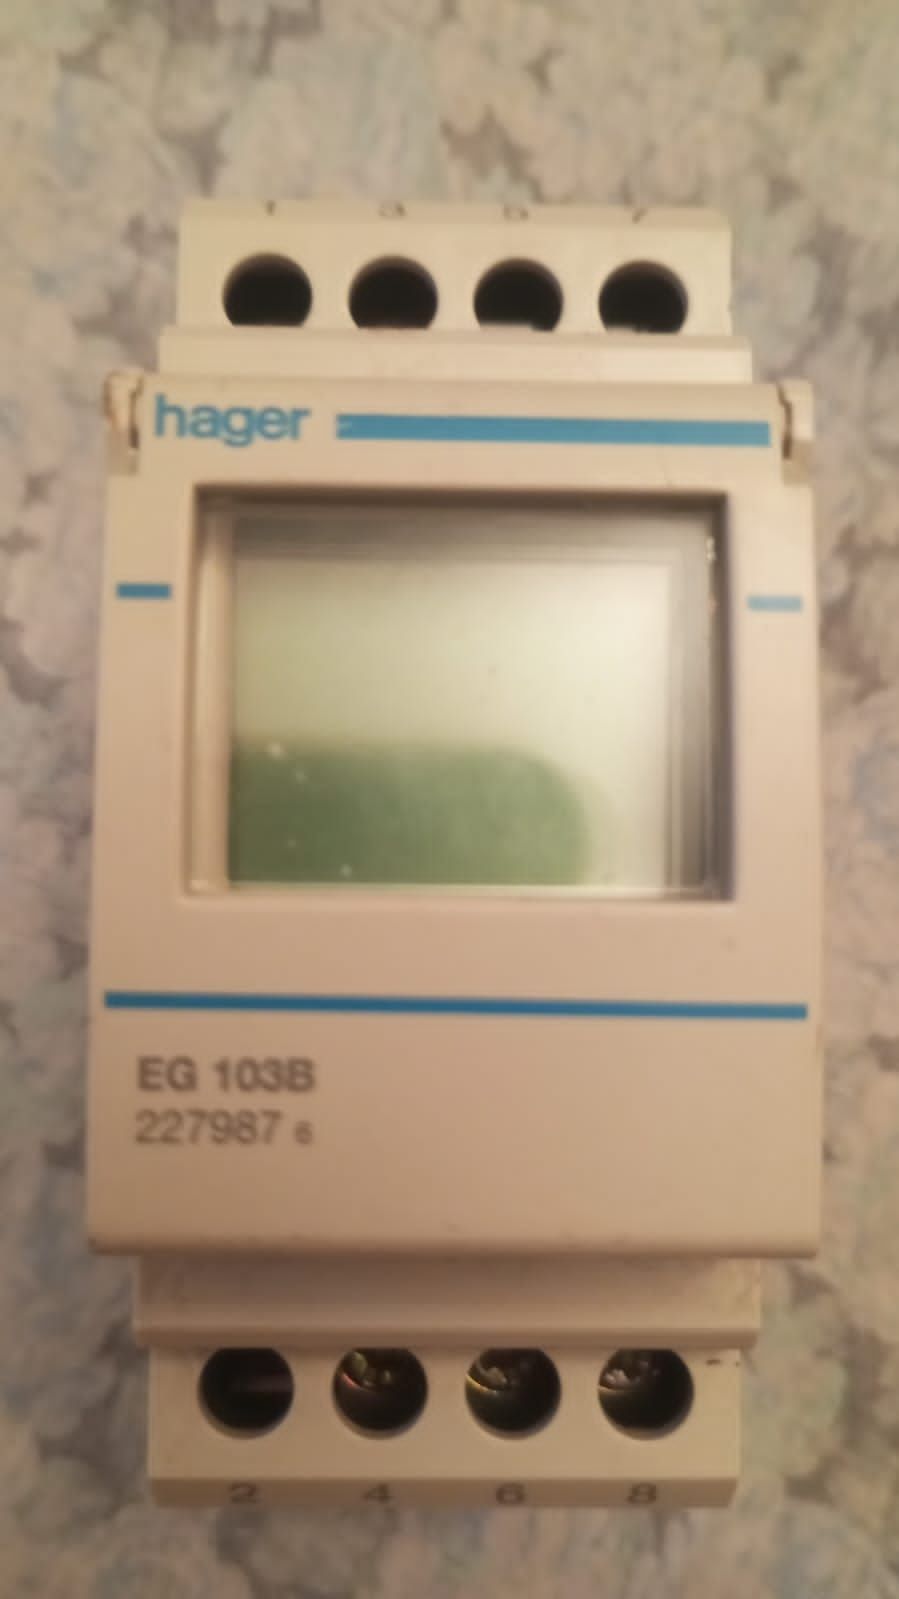 Hager 103B ,227987